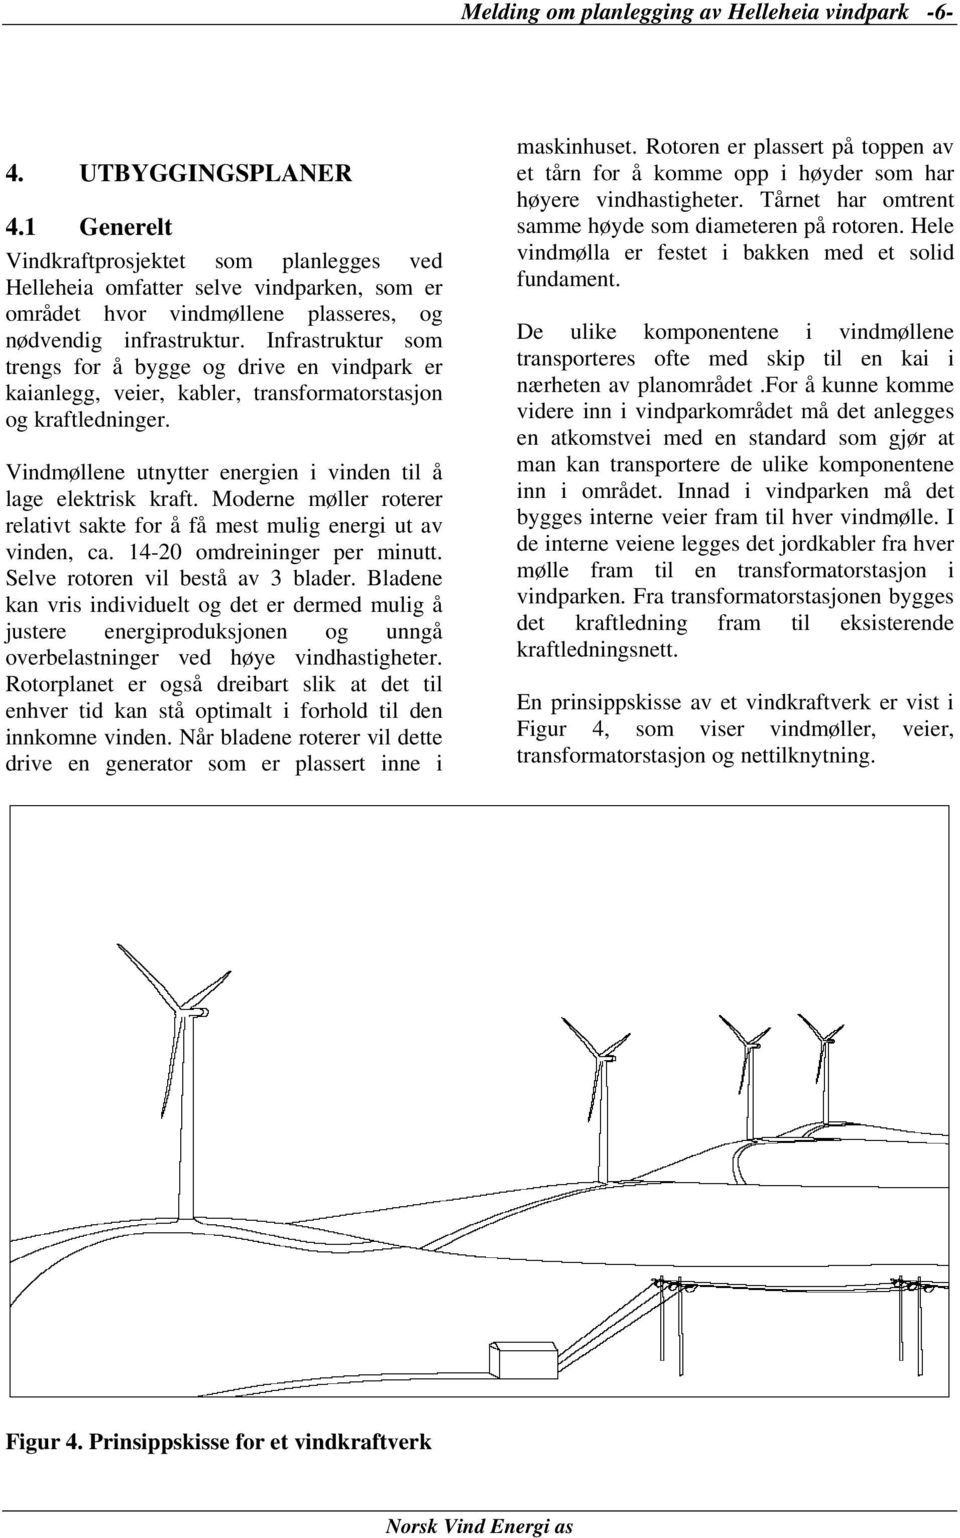 Infrastruktur som trengs for å bygge og drive en vindpark er kaianlegg, veier, kabler, transformatorstasjon og kraftledninger. Vindmøllene utnytter energien i vinden til å lage elektrisk kraft.